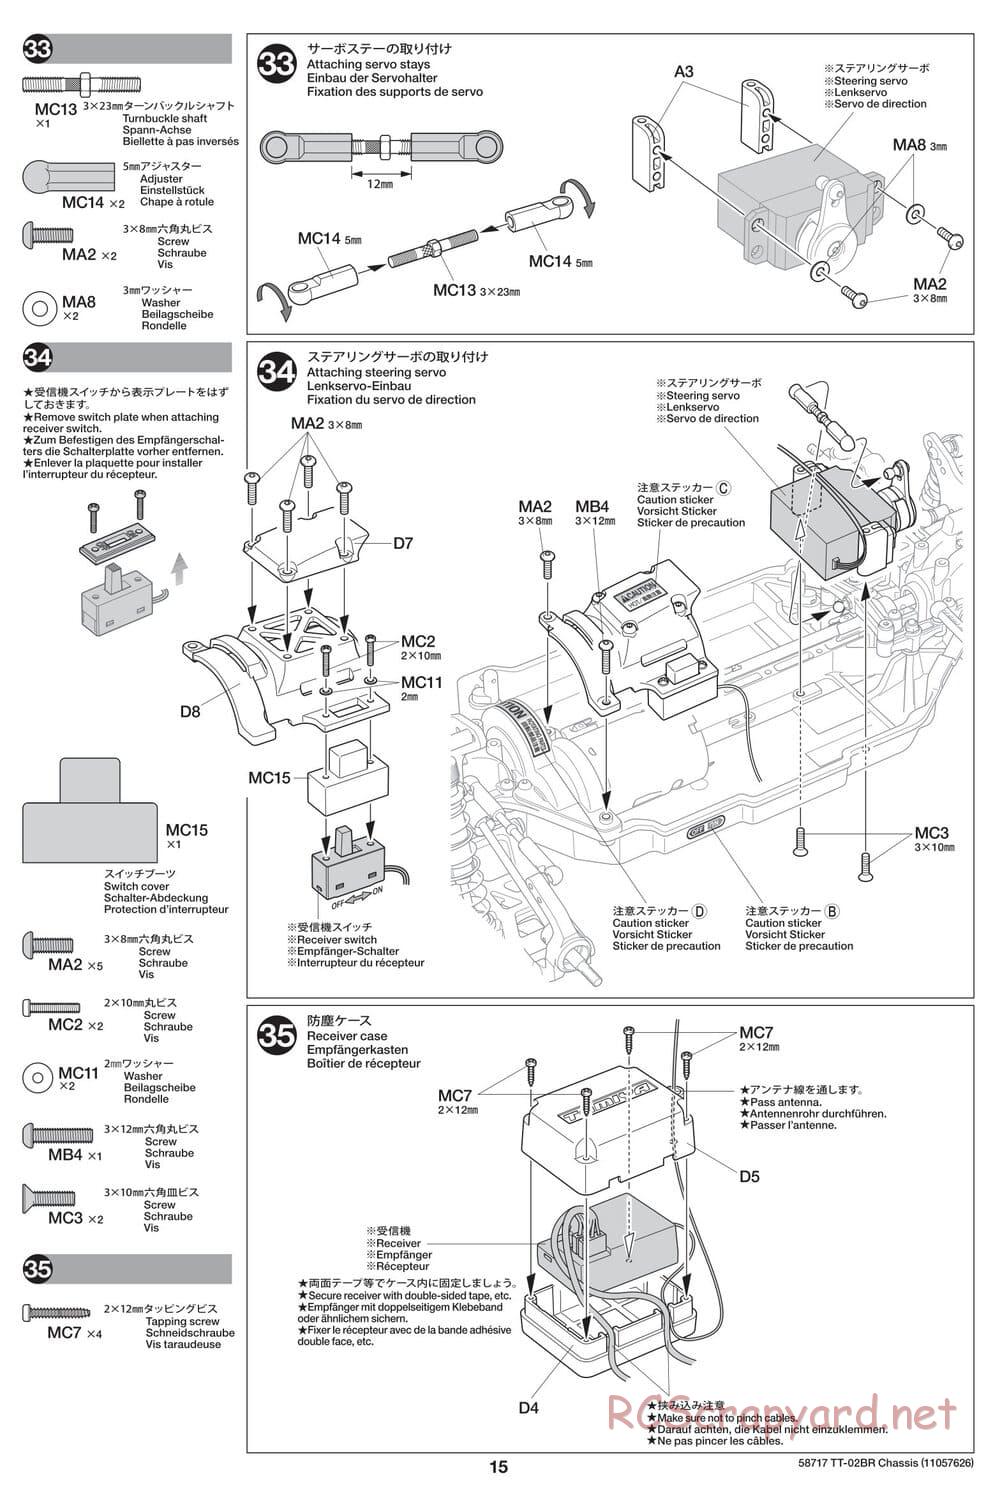 Tamiya - TT-02BR Chassis - Manual - Page 15